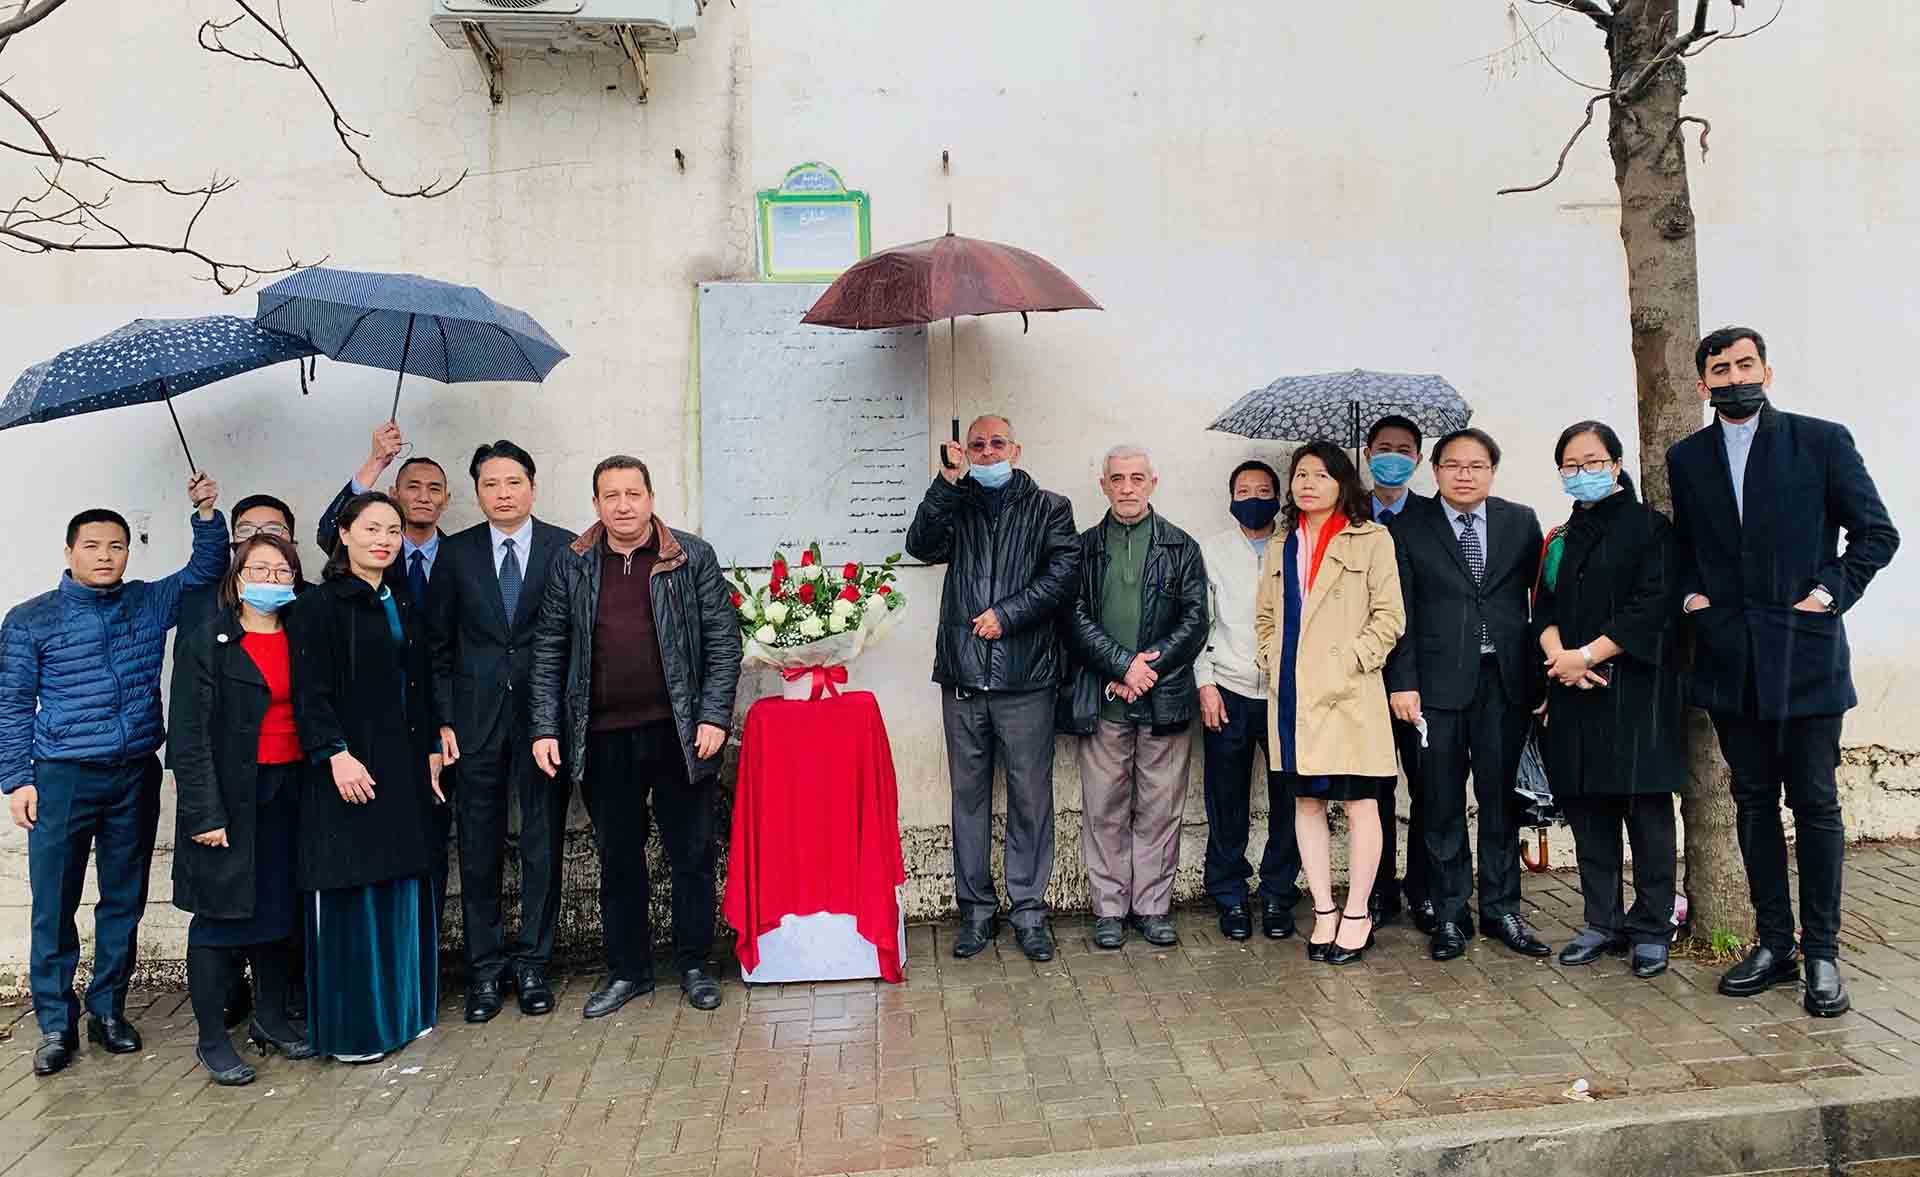 Đại sứ Nguyễn Thành Vinh đã dẫn đầu đoàn cán bộ, nhân viên Đại sứ quán và Cơ quan thường trú TTXVN tại Algeria đến dâng hoa tại bia tưởng niệm các nhà báo Algeria, Việt Nam và phi hành đoàn hy sinh năm 1974.